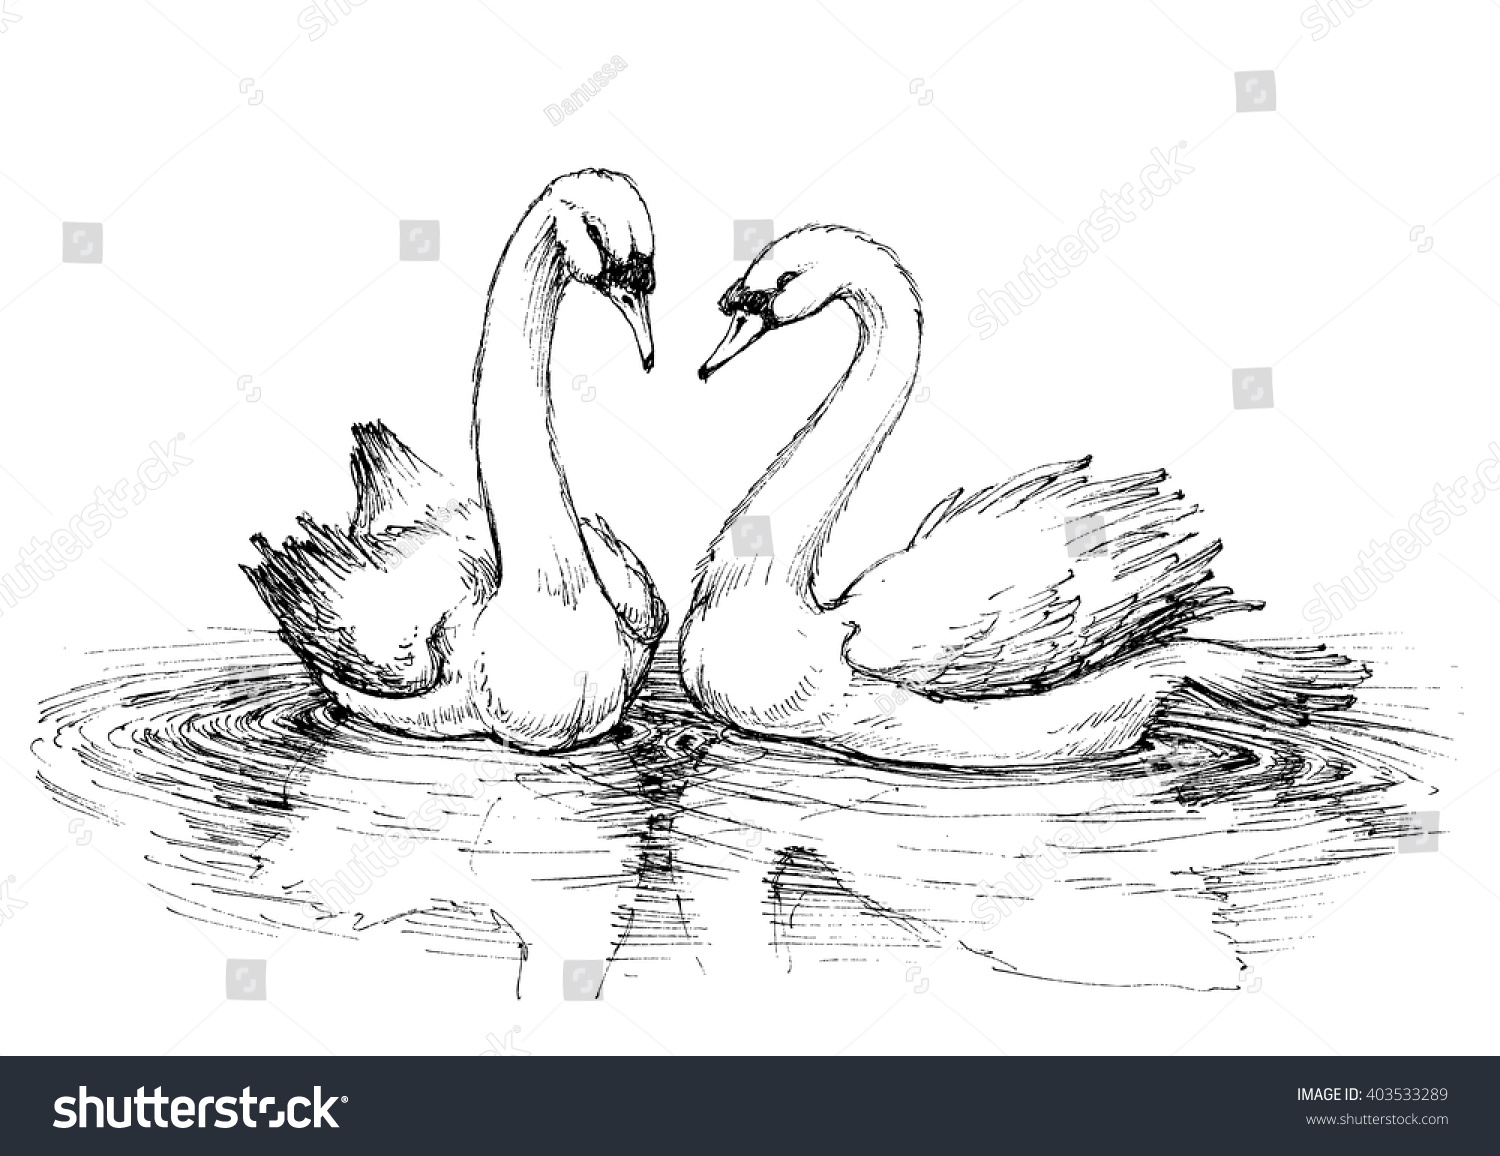 Рисунок лебедя для срисовки